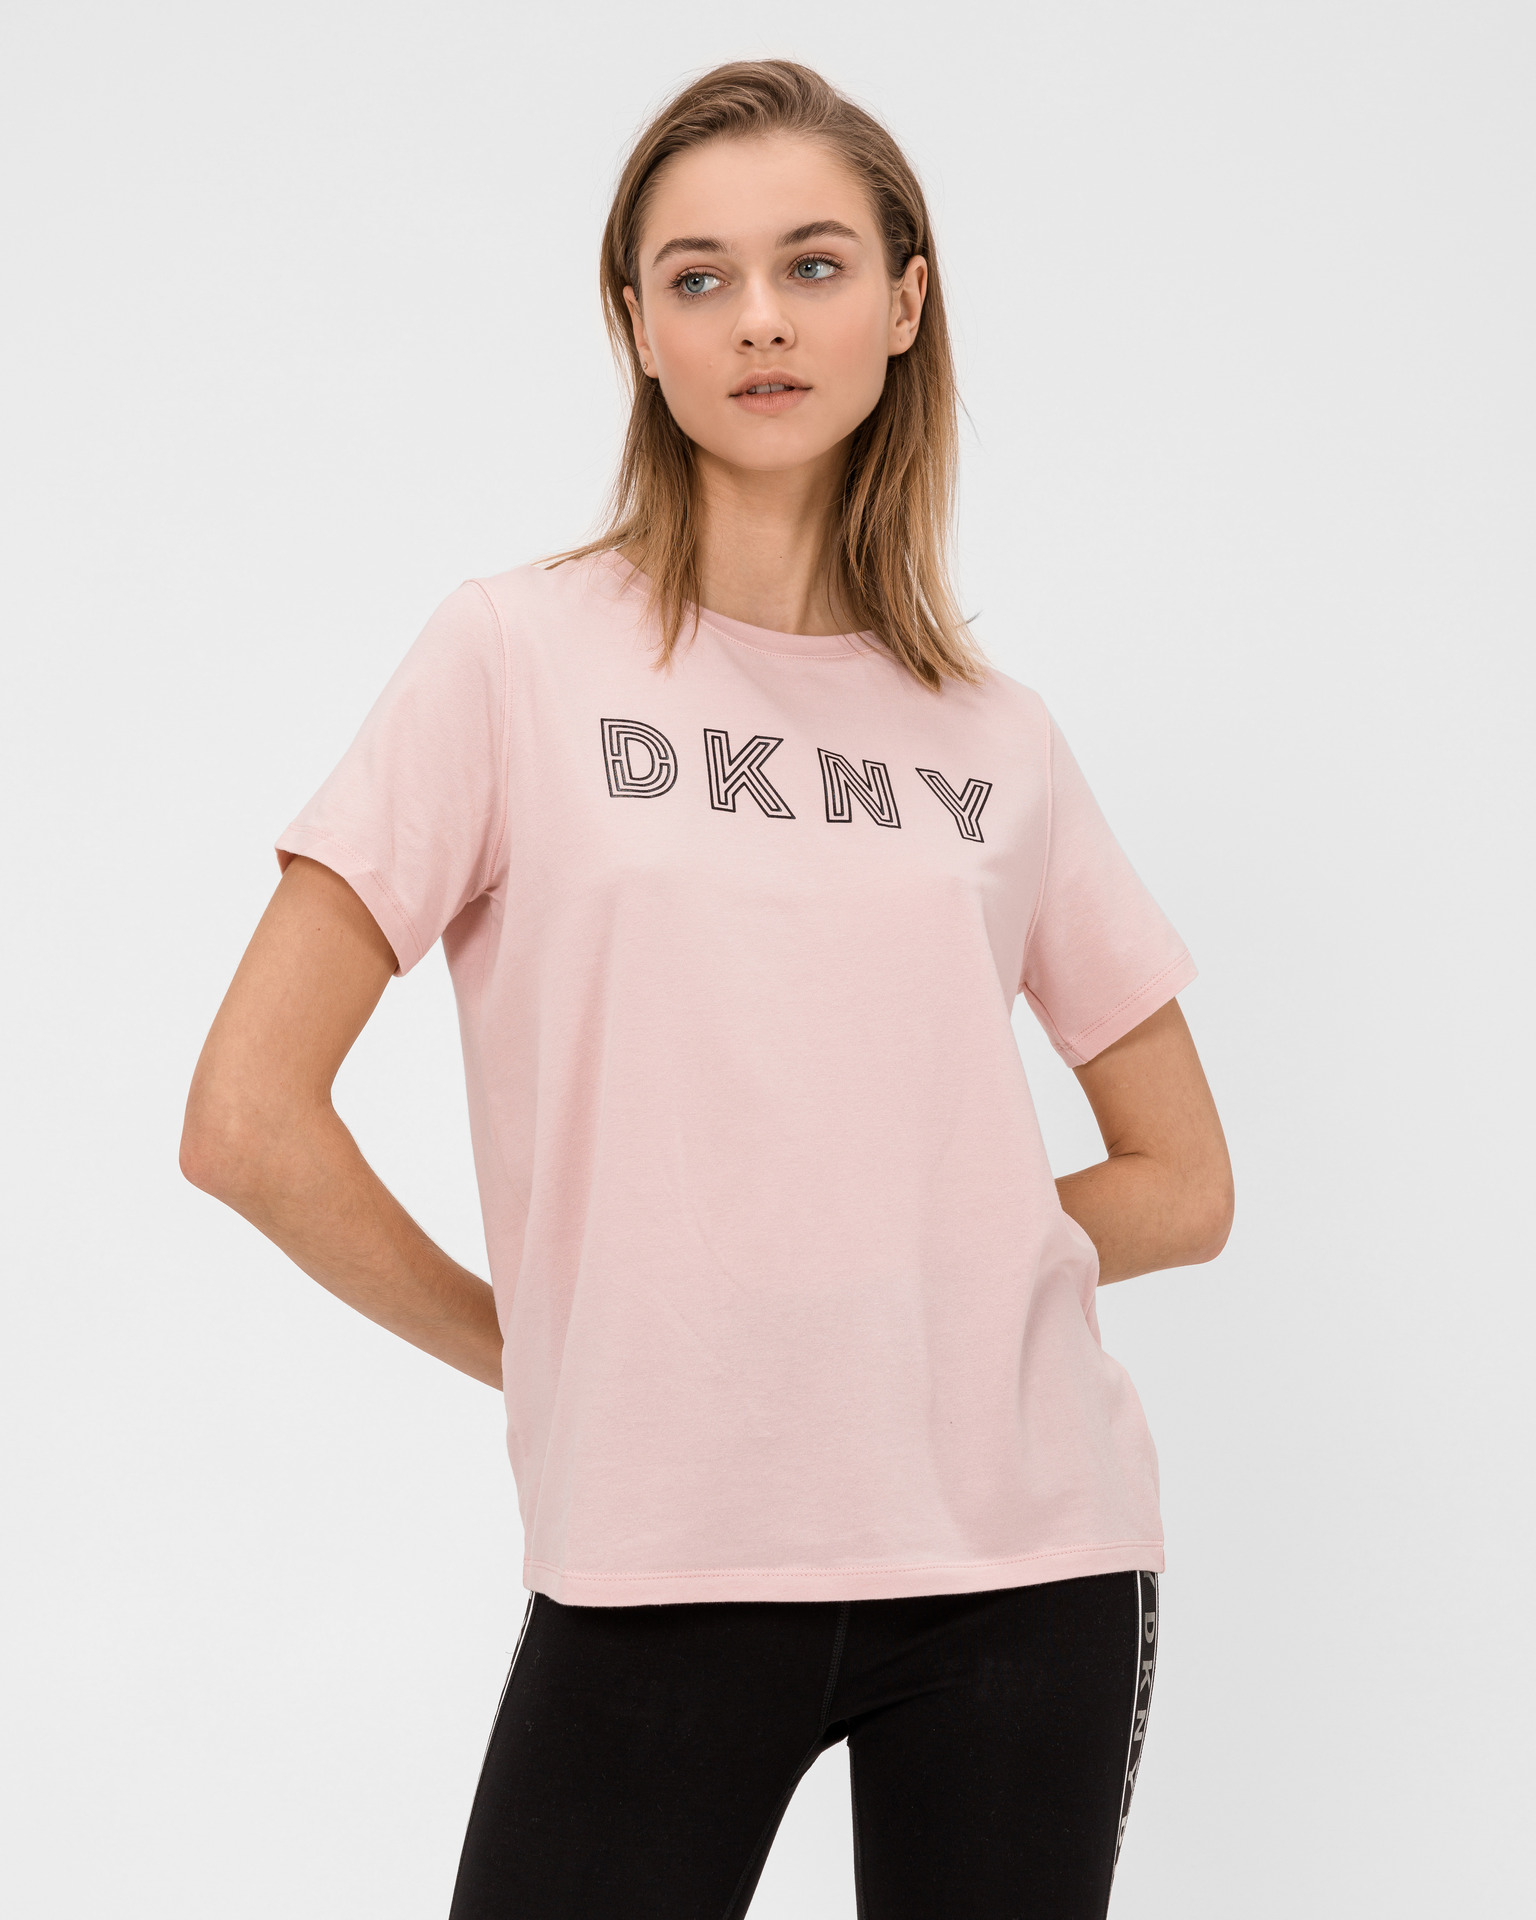 DKNY Sport Women's White Short Sleeve Black Writing Logo